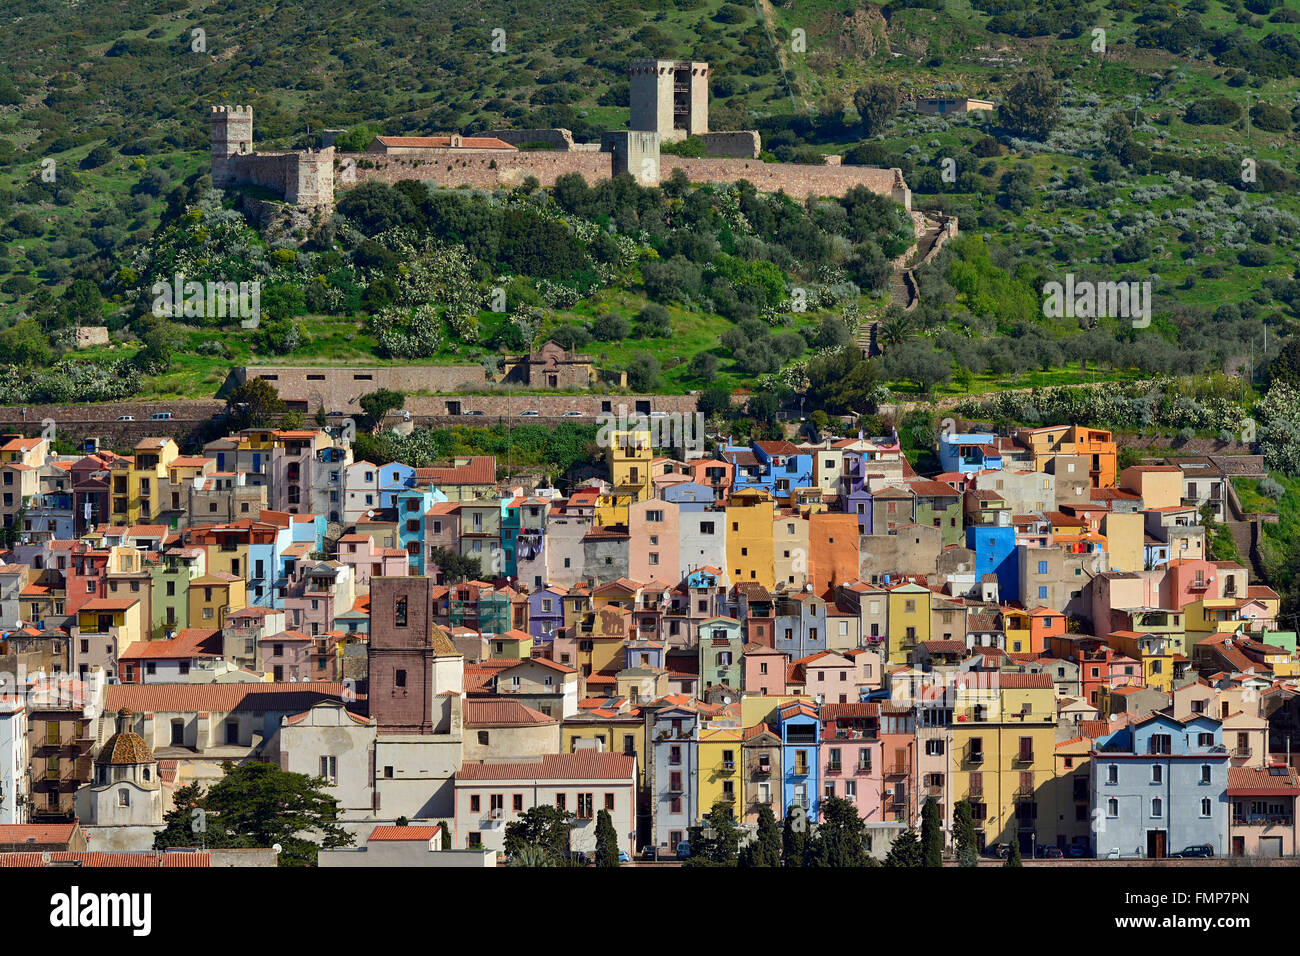 Cityscape with Castello Malaspina castle, Bosa, Sardinia, Italy Stock Photo